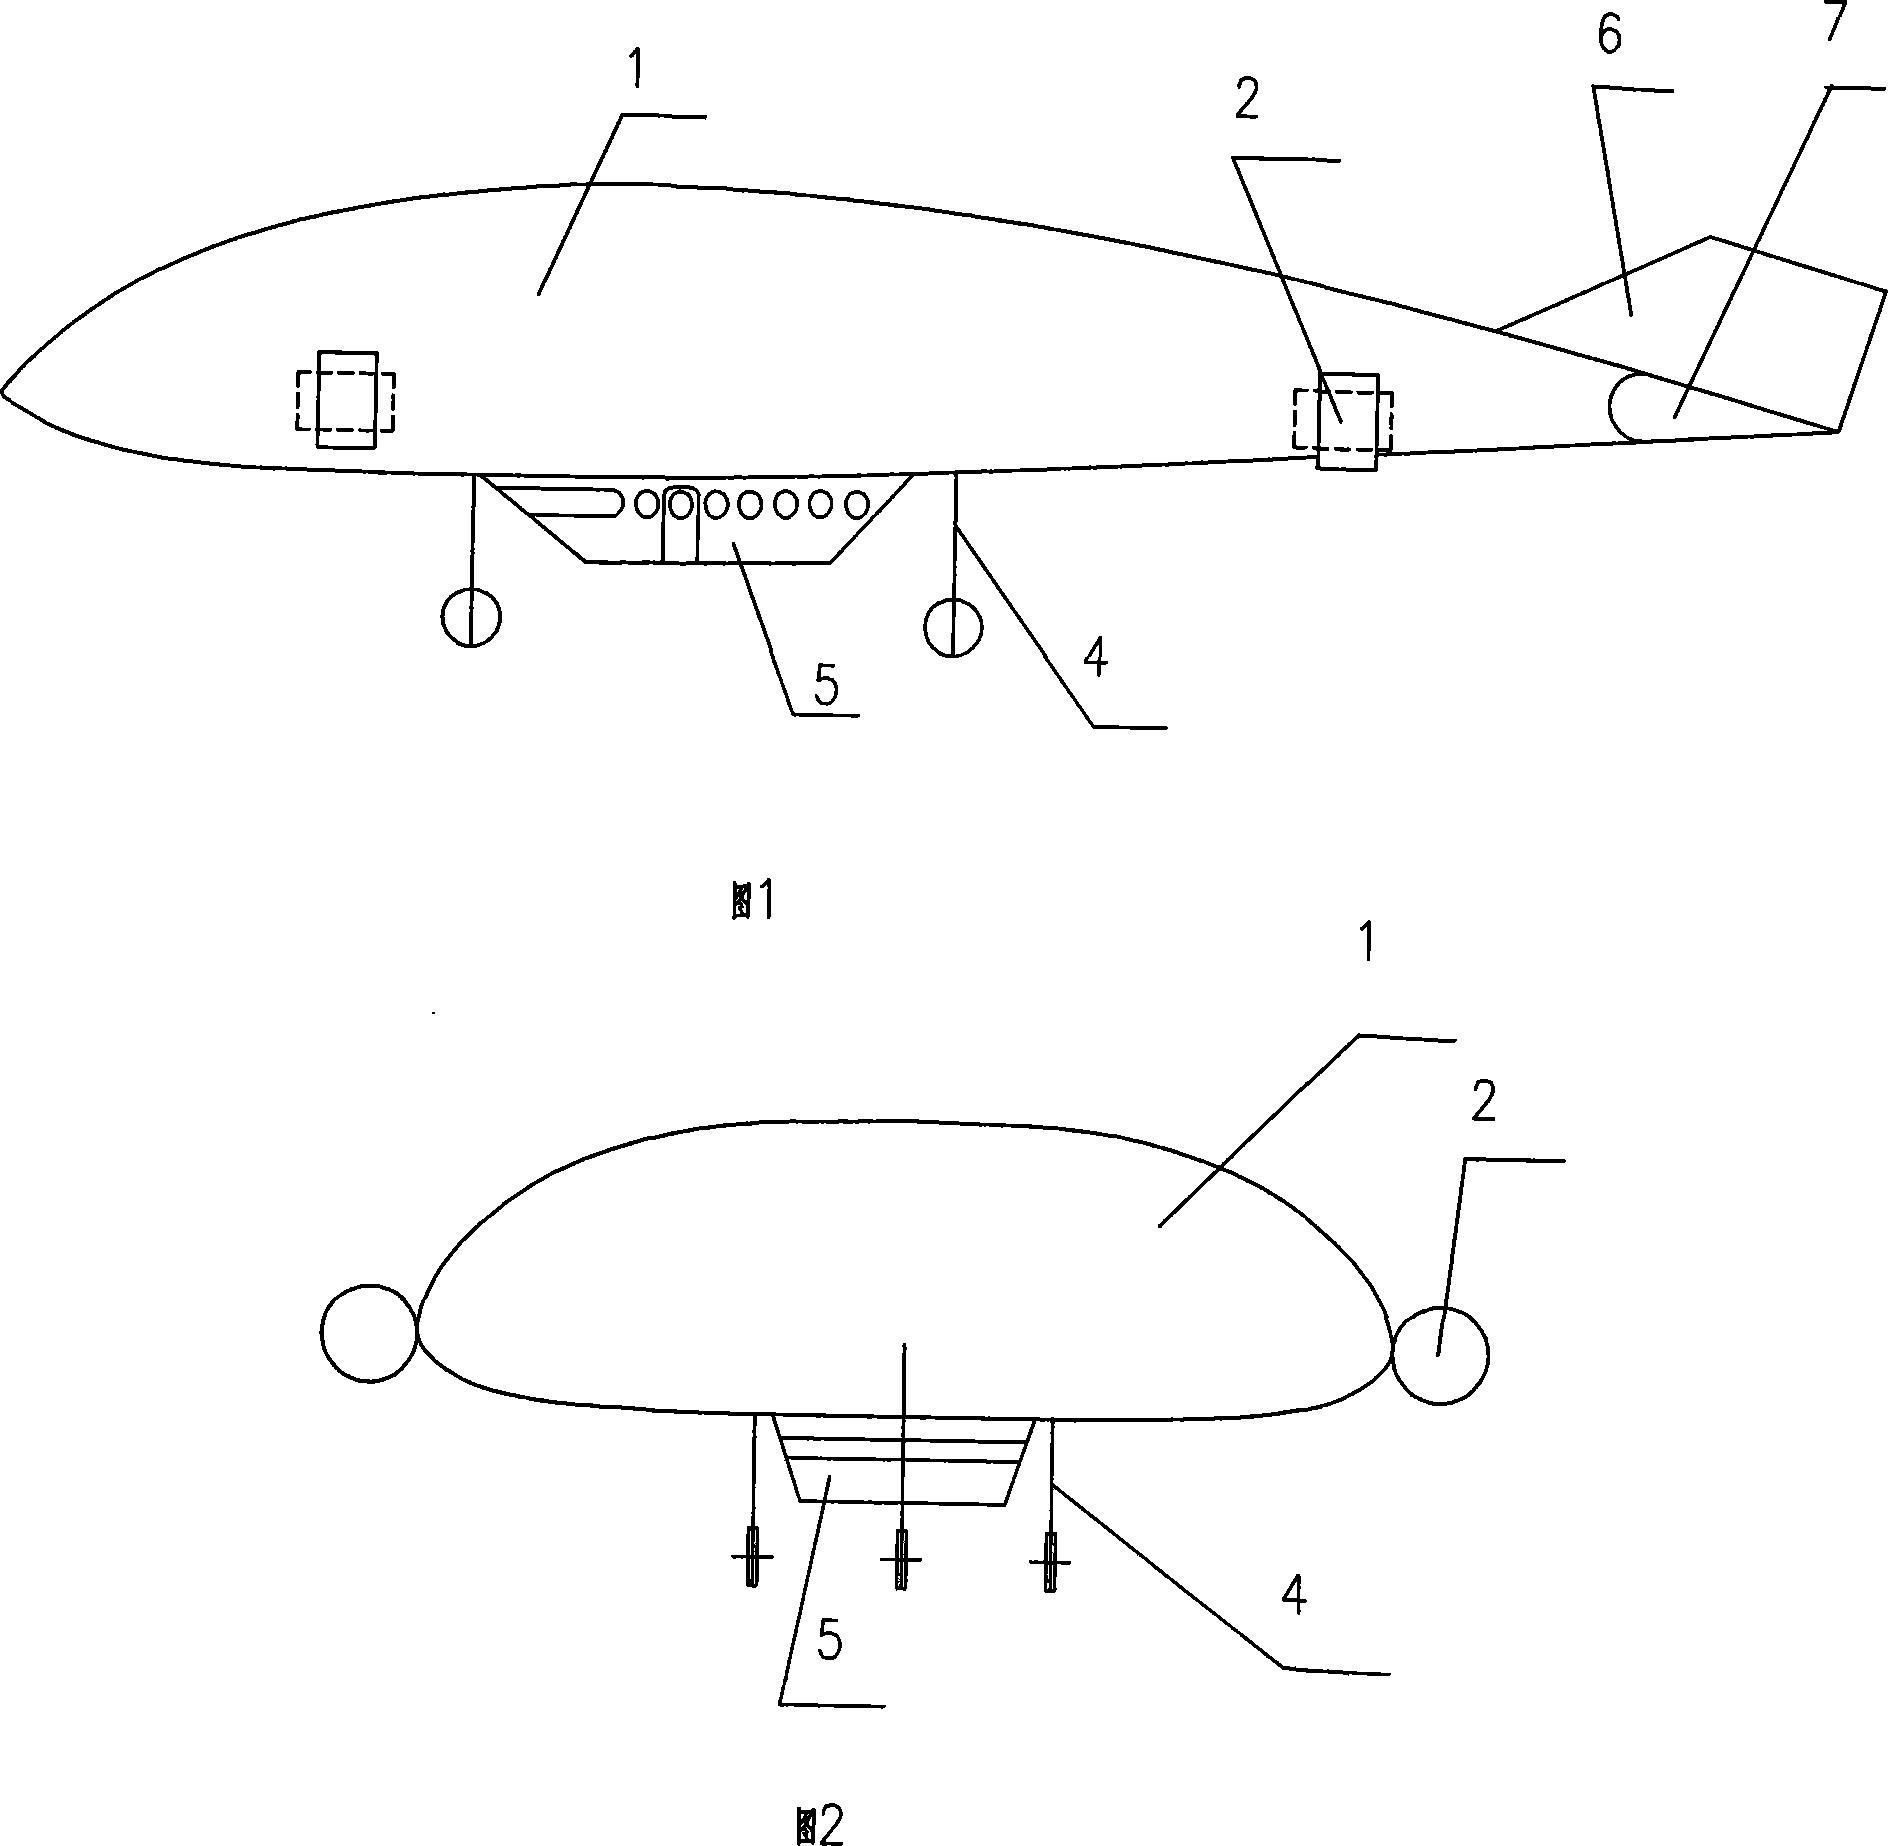 A novel V-shaped sopiler airship